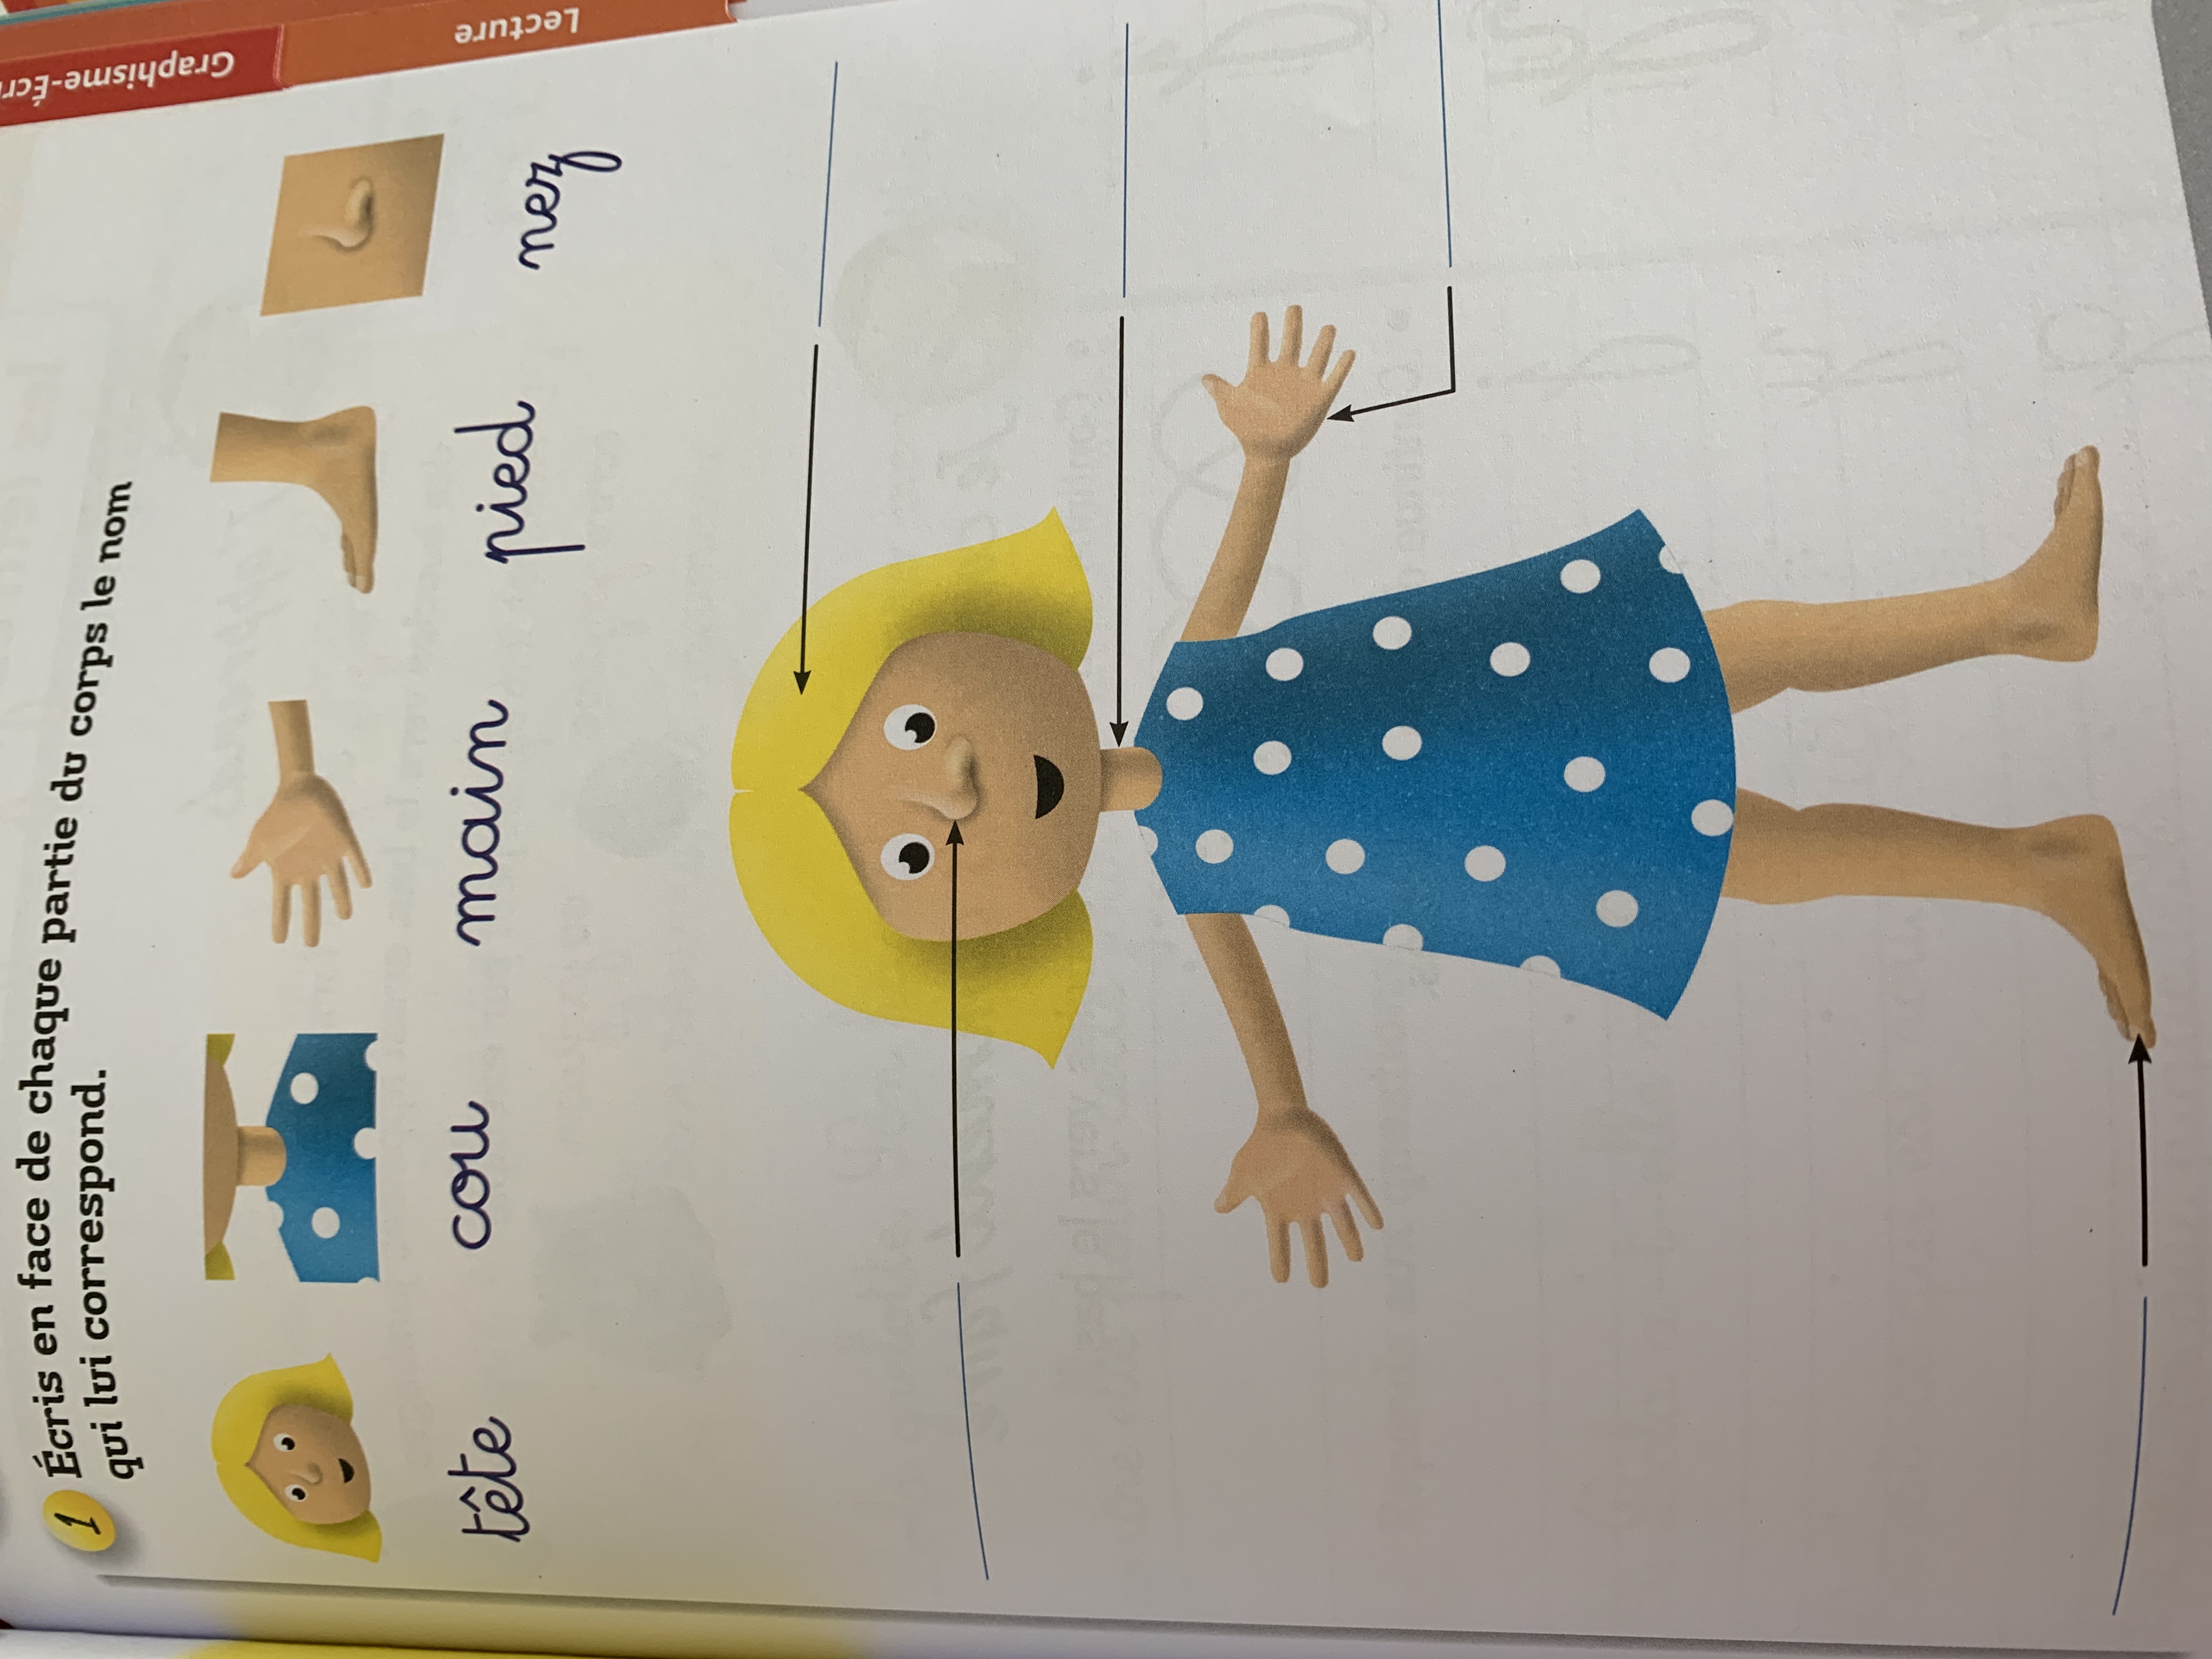 Cahier de vacances Montessori